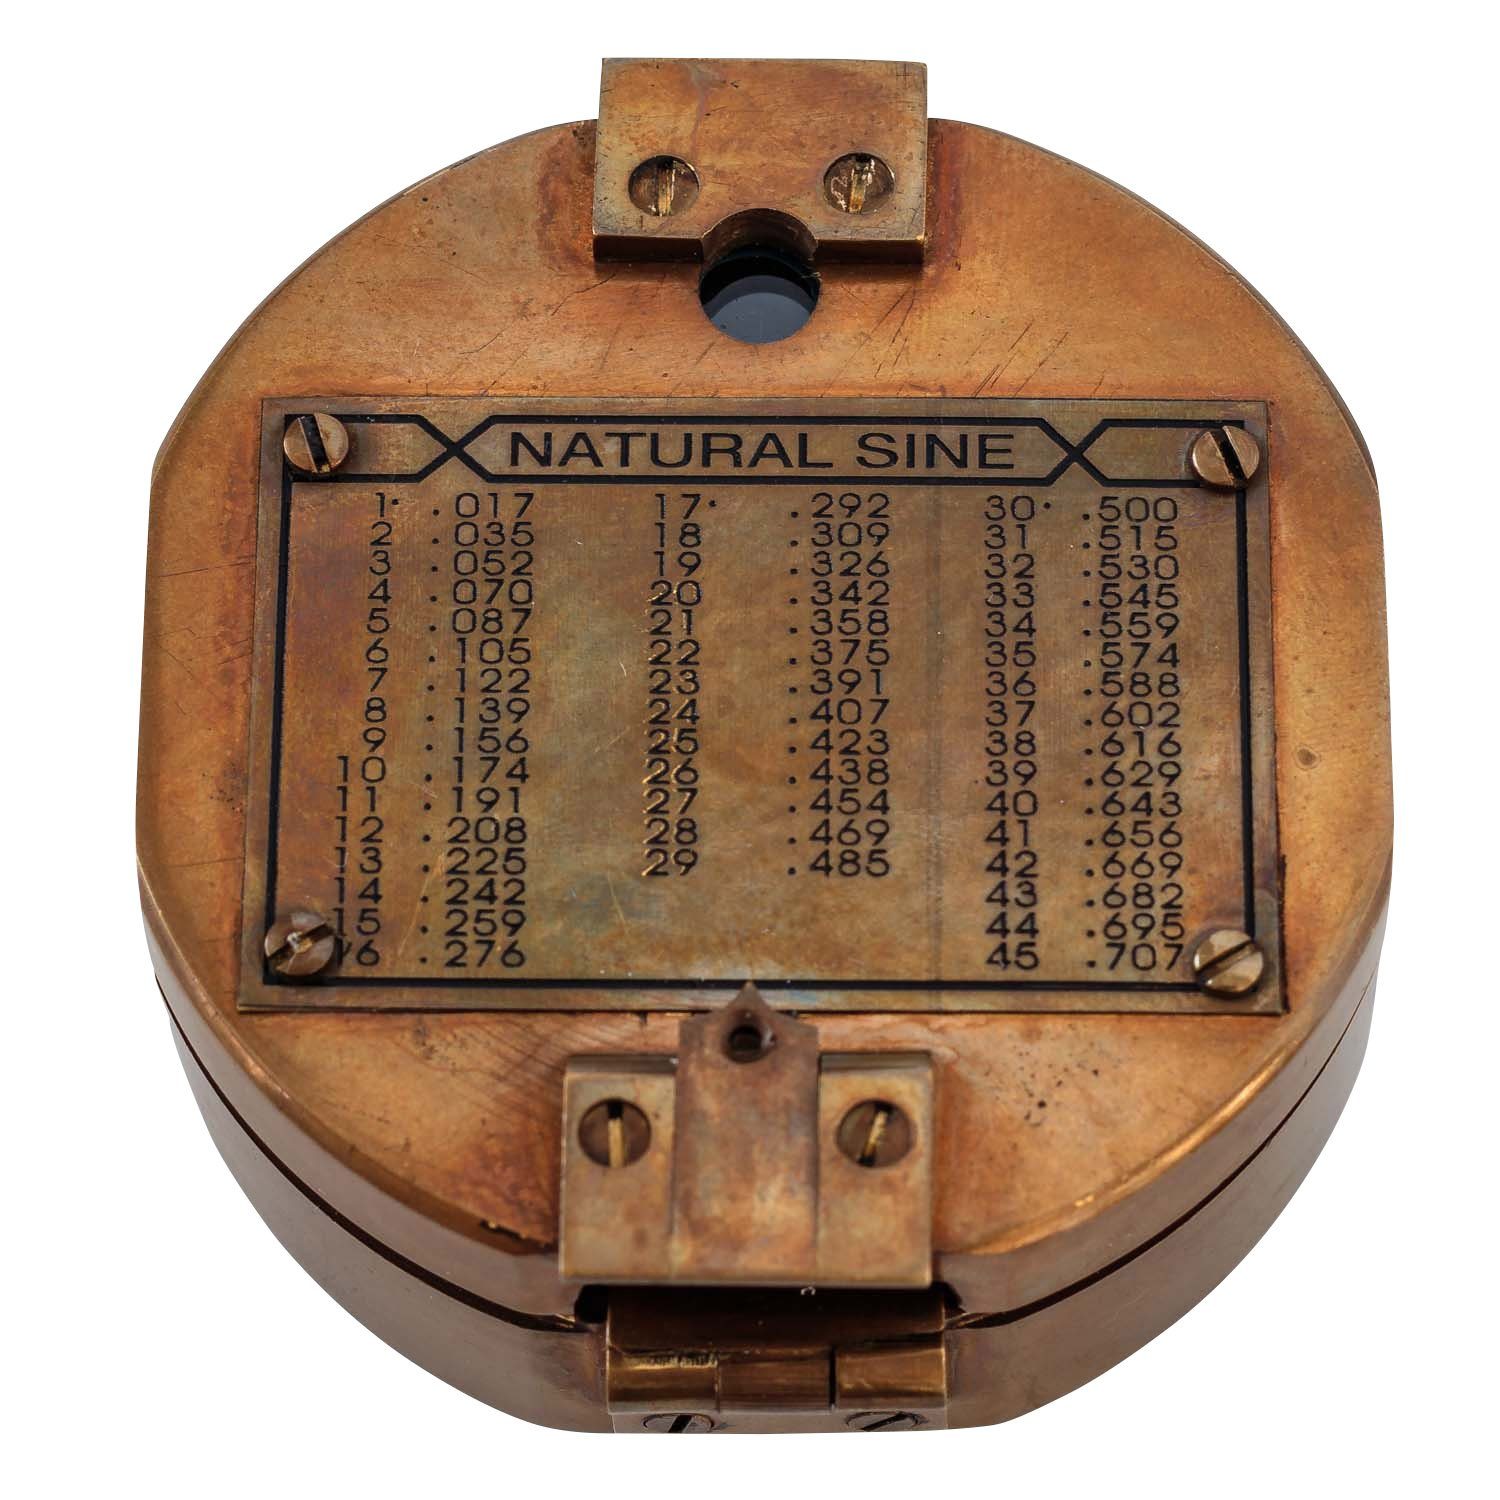 Antik-Stil Navigation Aubaho Messing Maritim Replik Kompass Glas Kompass Peilkompass